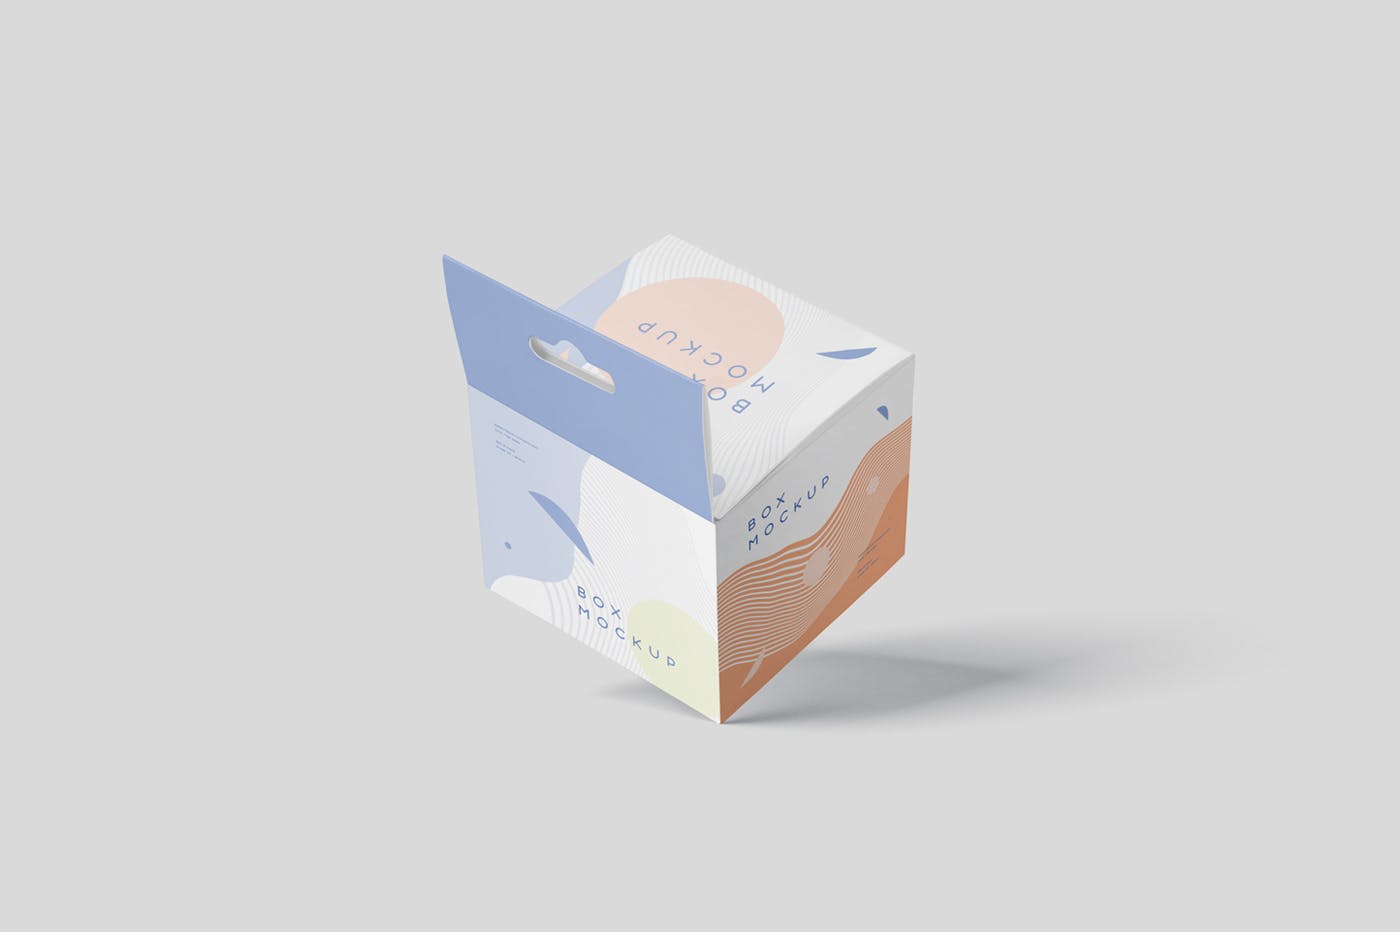 挂耳式迷你方形包装盒第一素材精选模板 Box Mockup Set – Mini Square with Hanger插图(5)